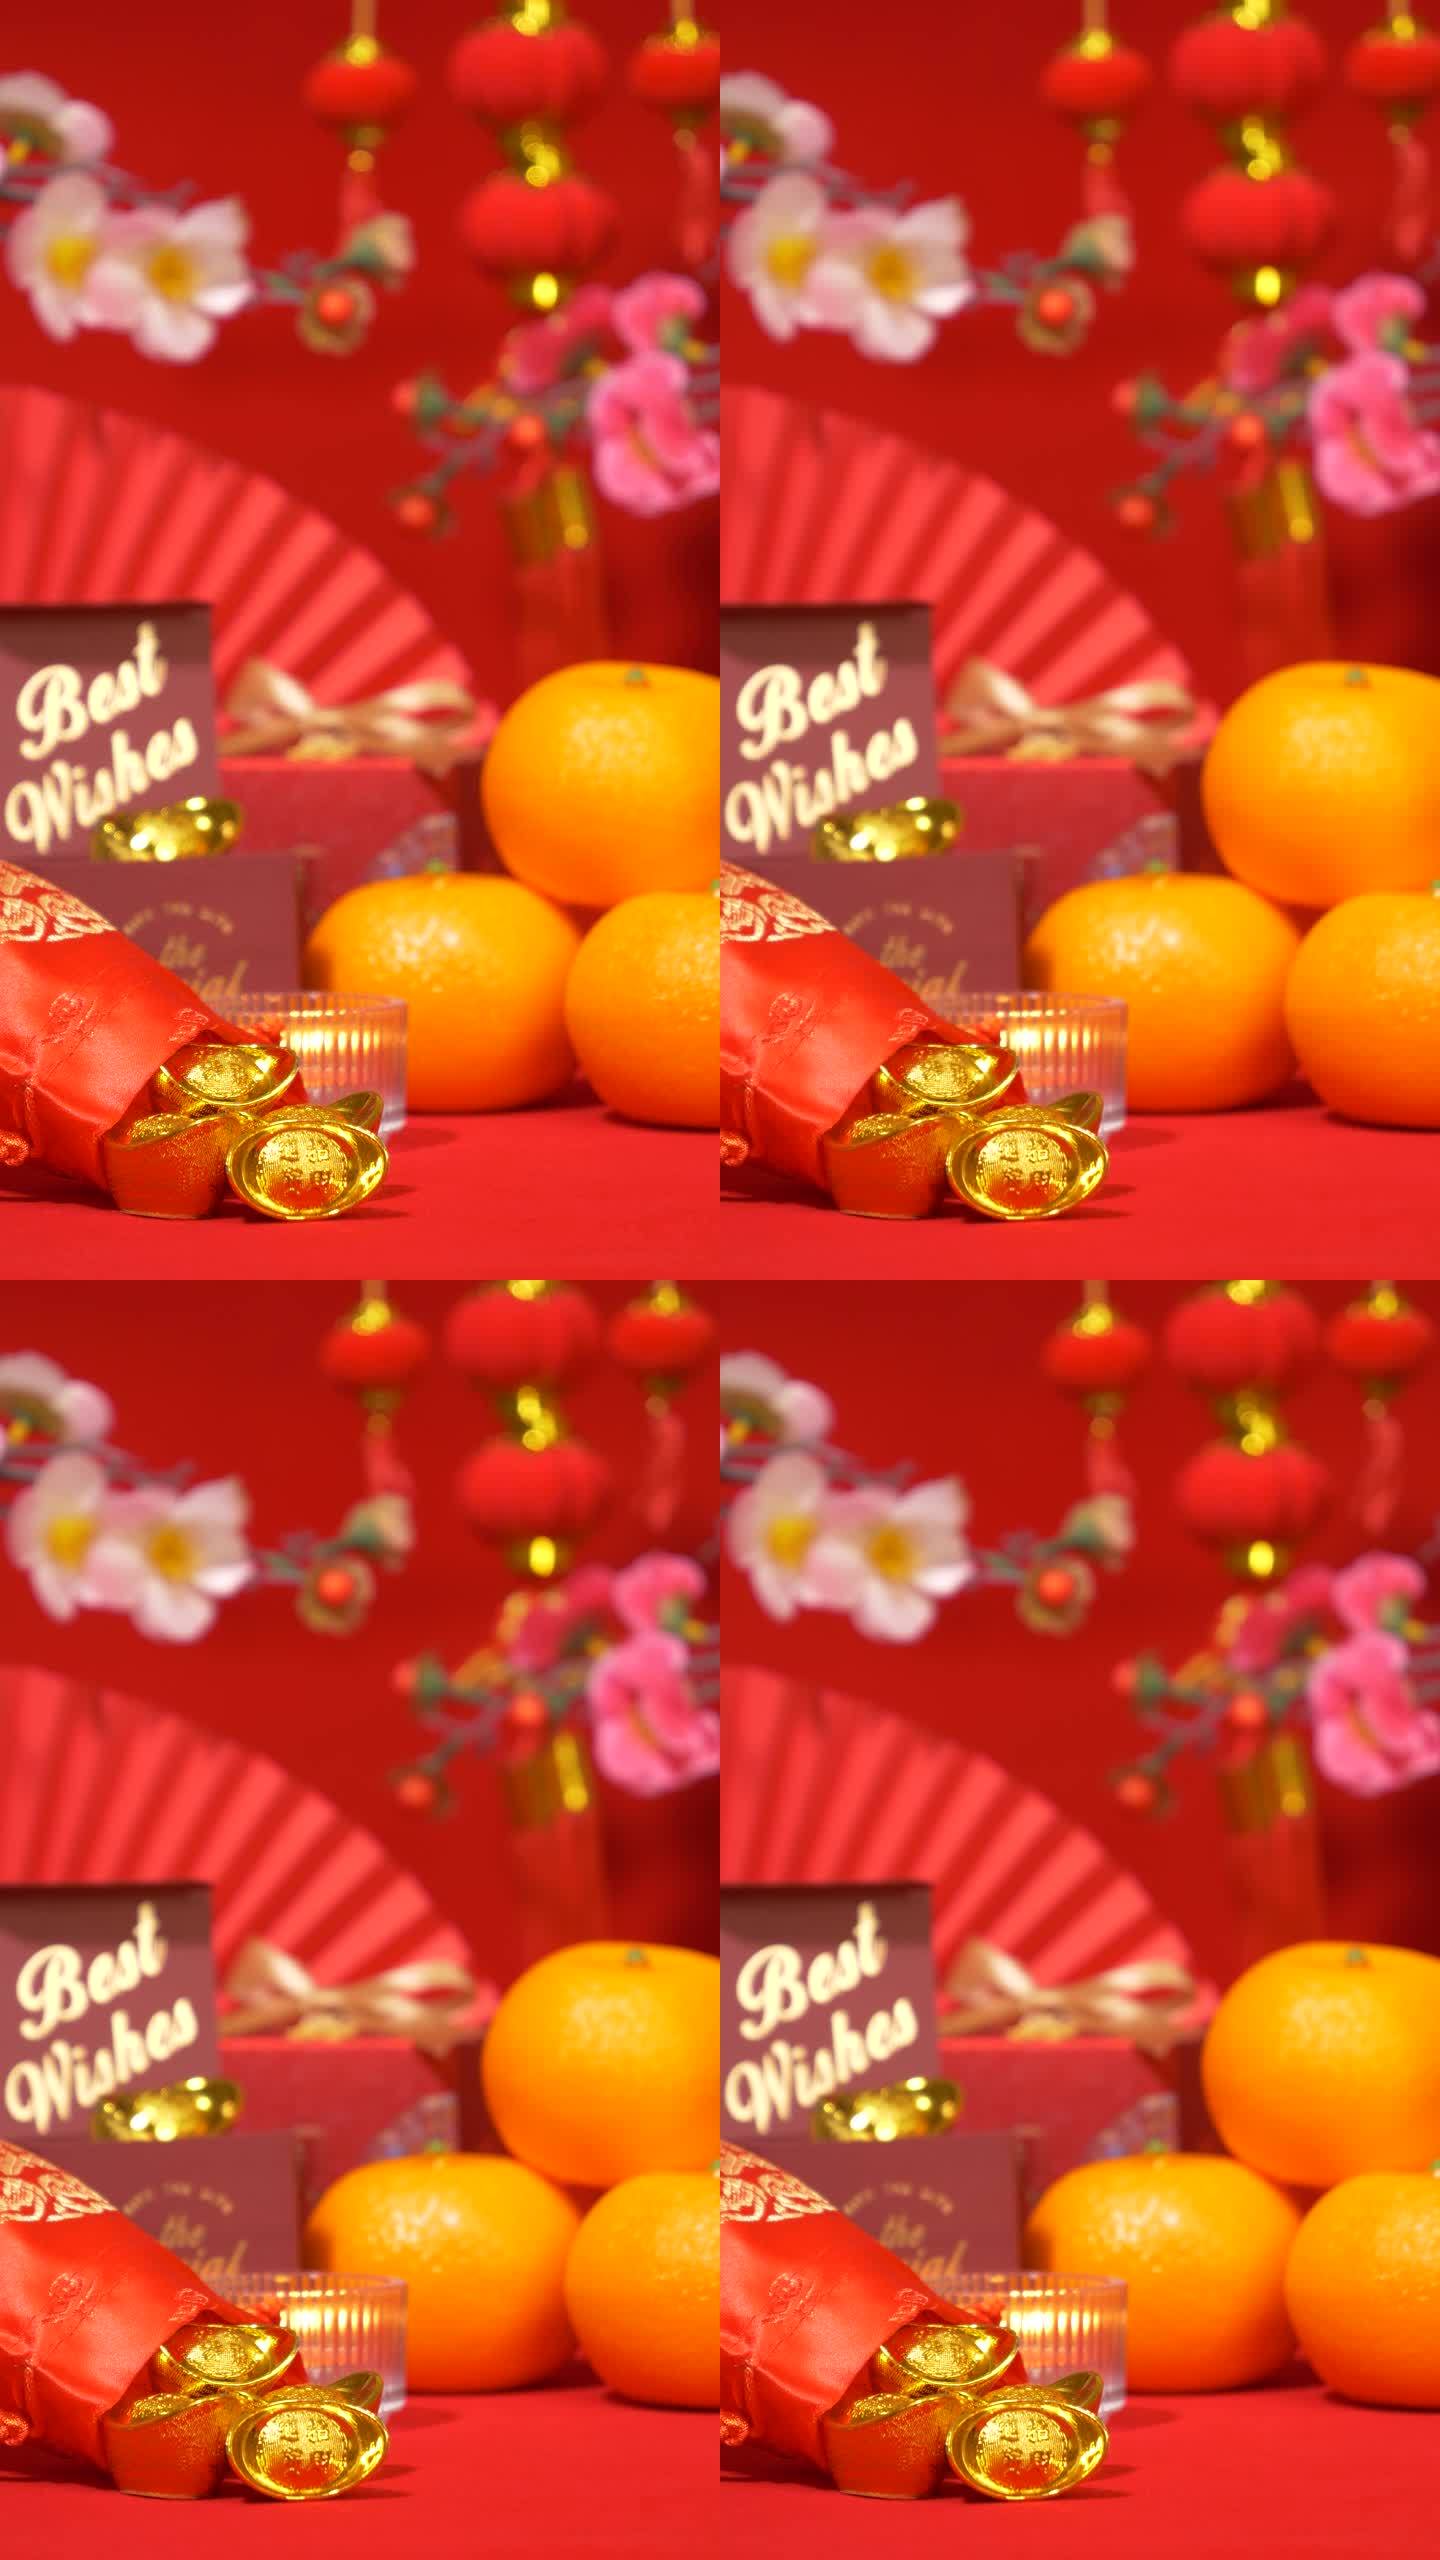 中国农历新年背景的环形垂直。中国古代金条，带文字祝福的红色礼盒，橘子，纸扇，梅花枝，蜡烛摇曳，红纸灯